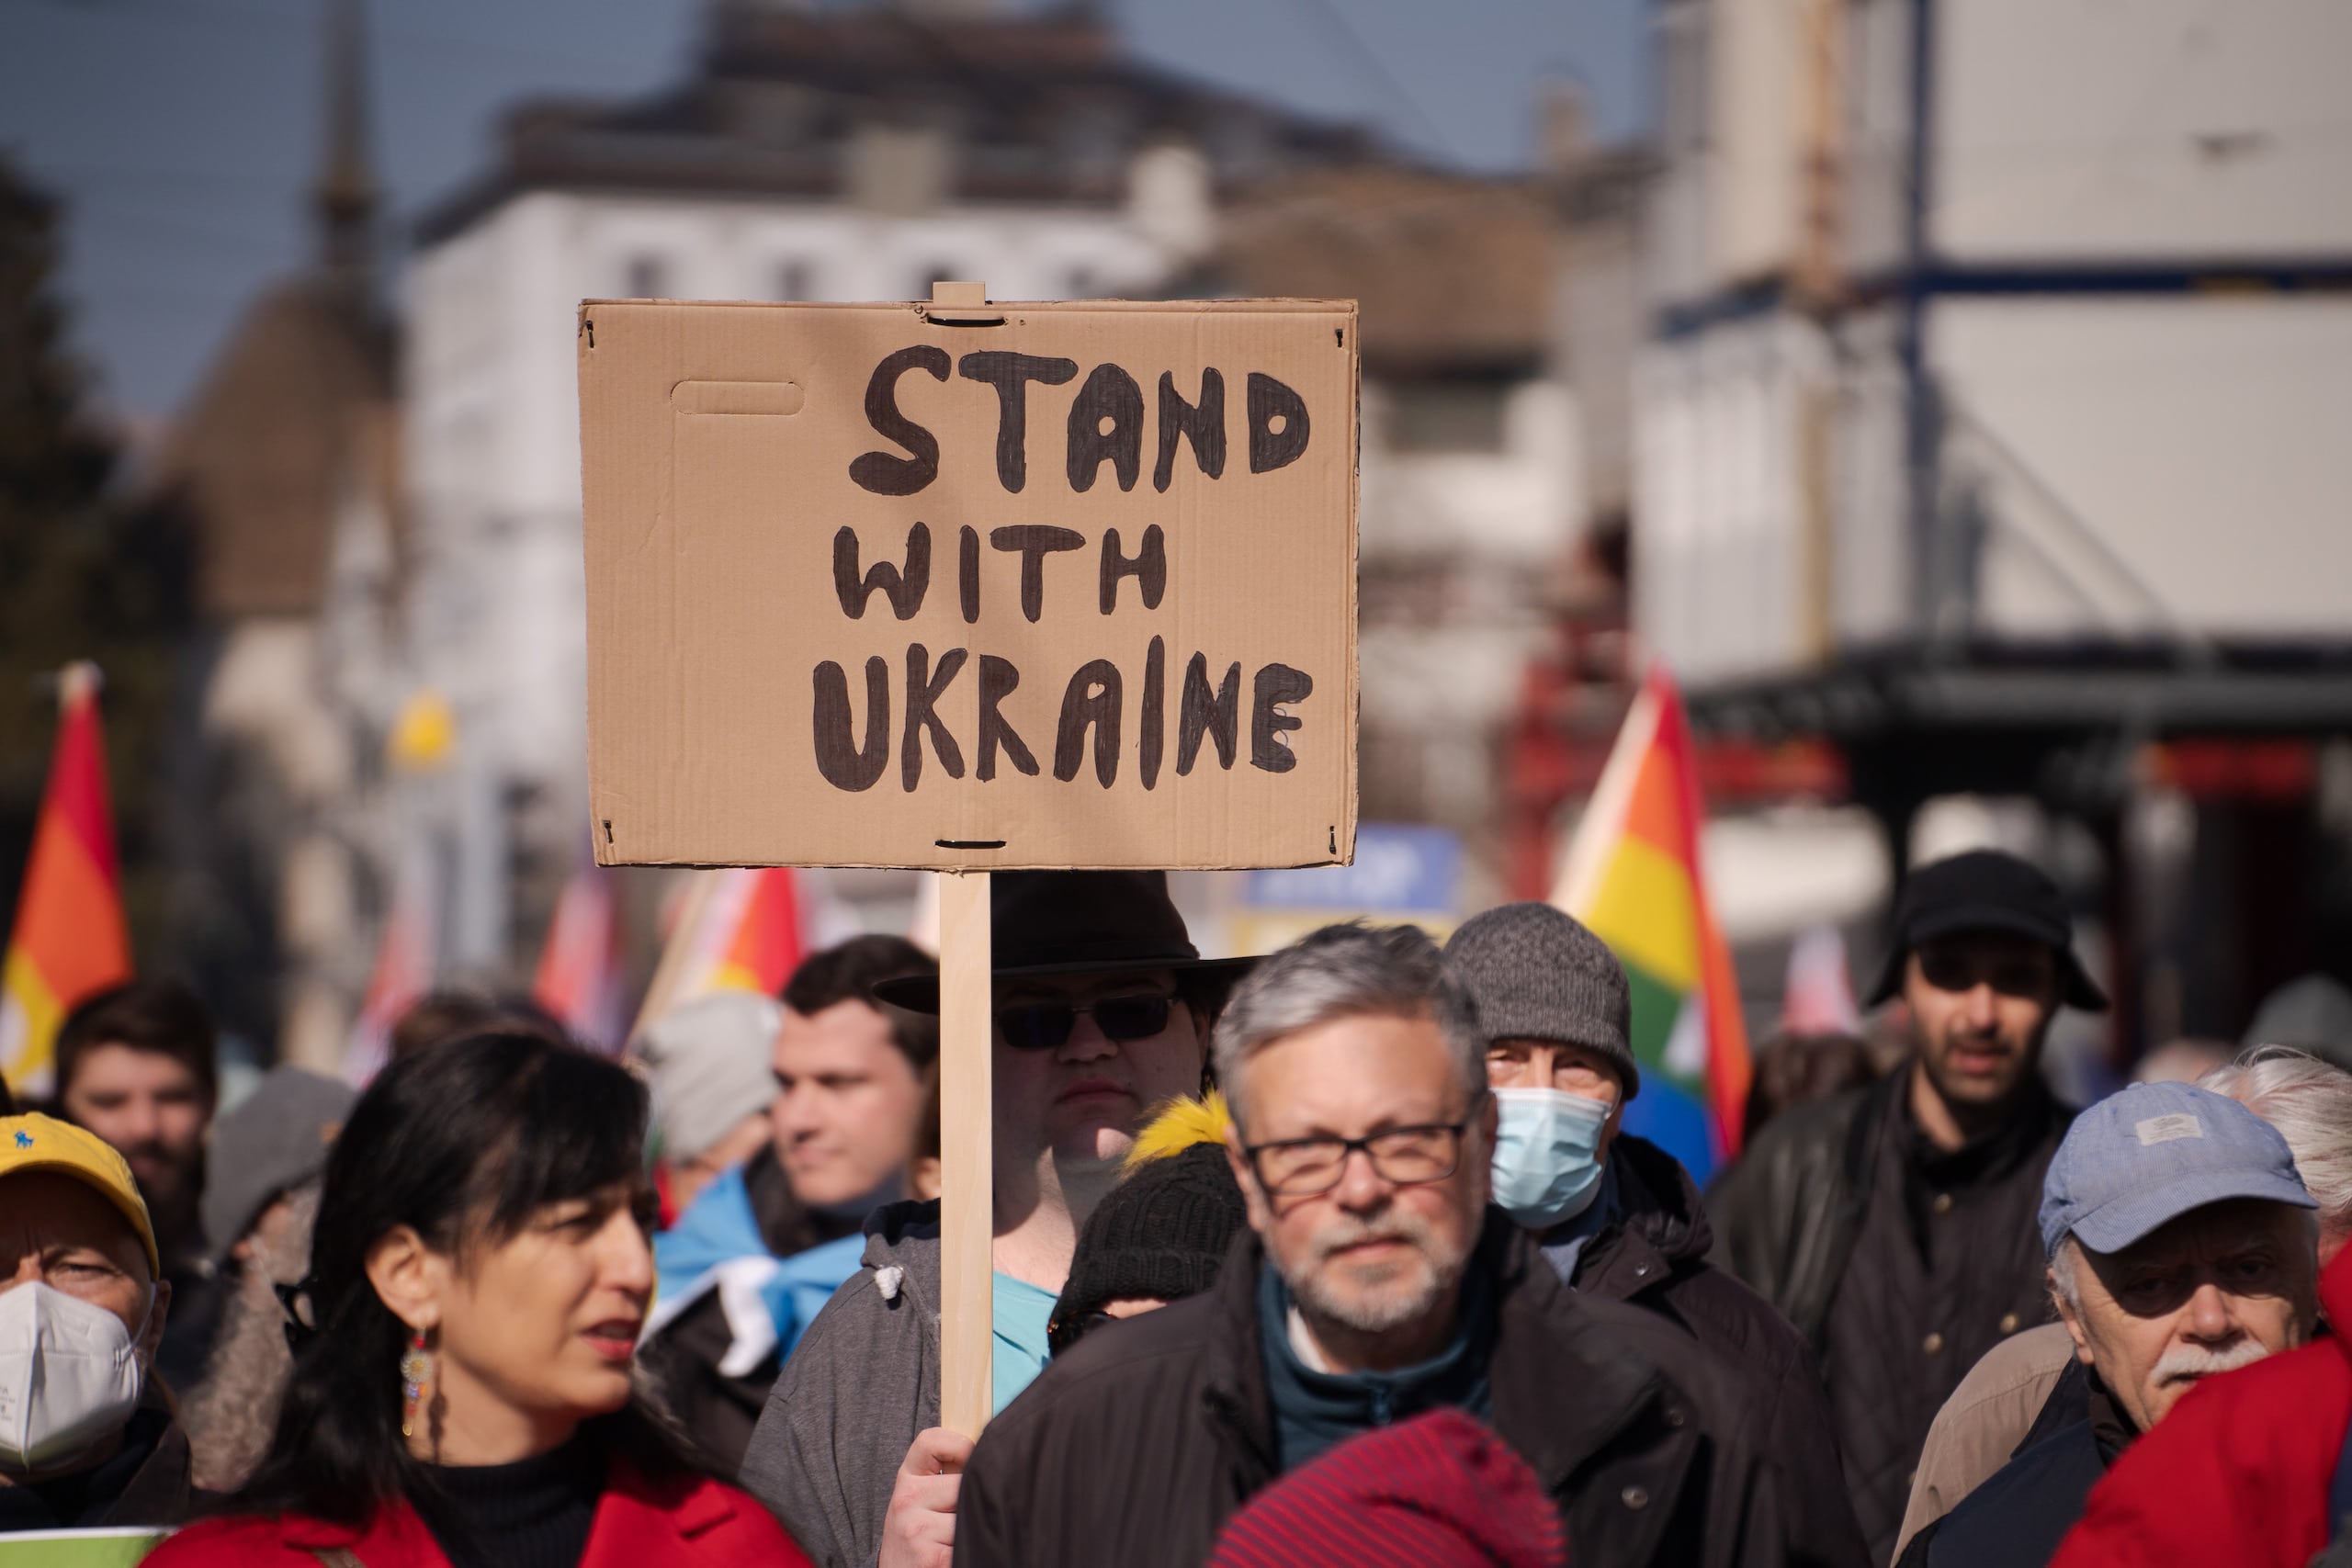 24 февраля 2022 года Россия напала на Украину. Антивоенные демонстрации собирают десятки тысяч людей в разных городах мира. Цюрих. 5.03.2022 г. (© liveit.ch / Manuel Lopez)